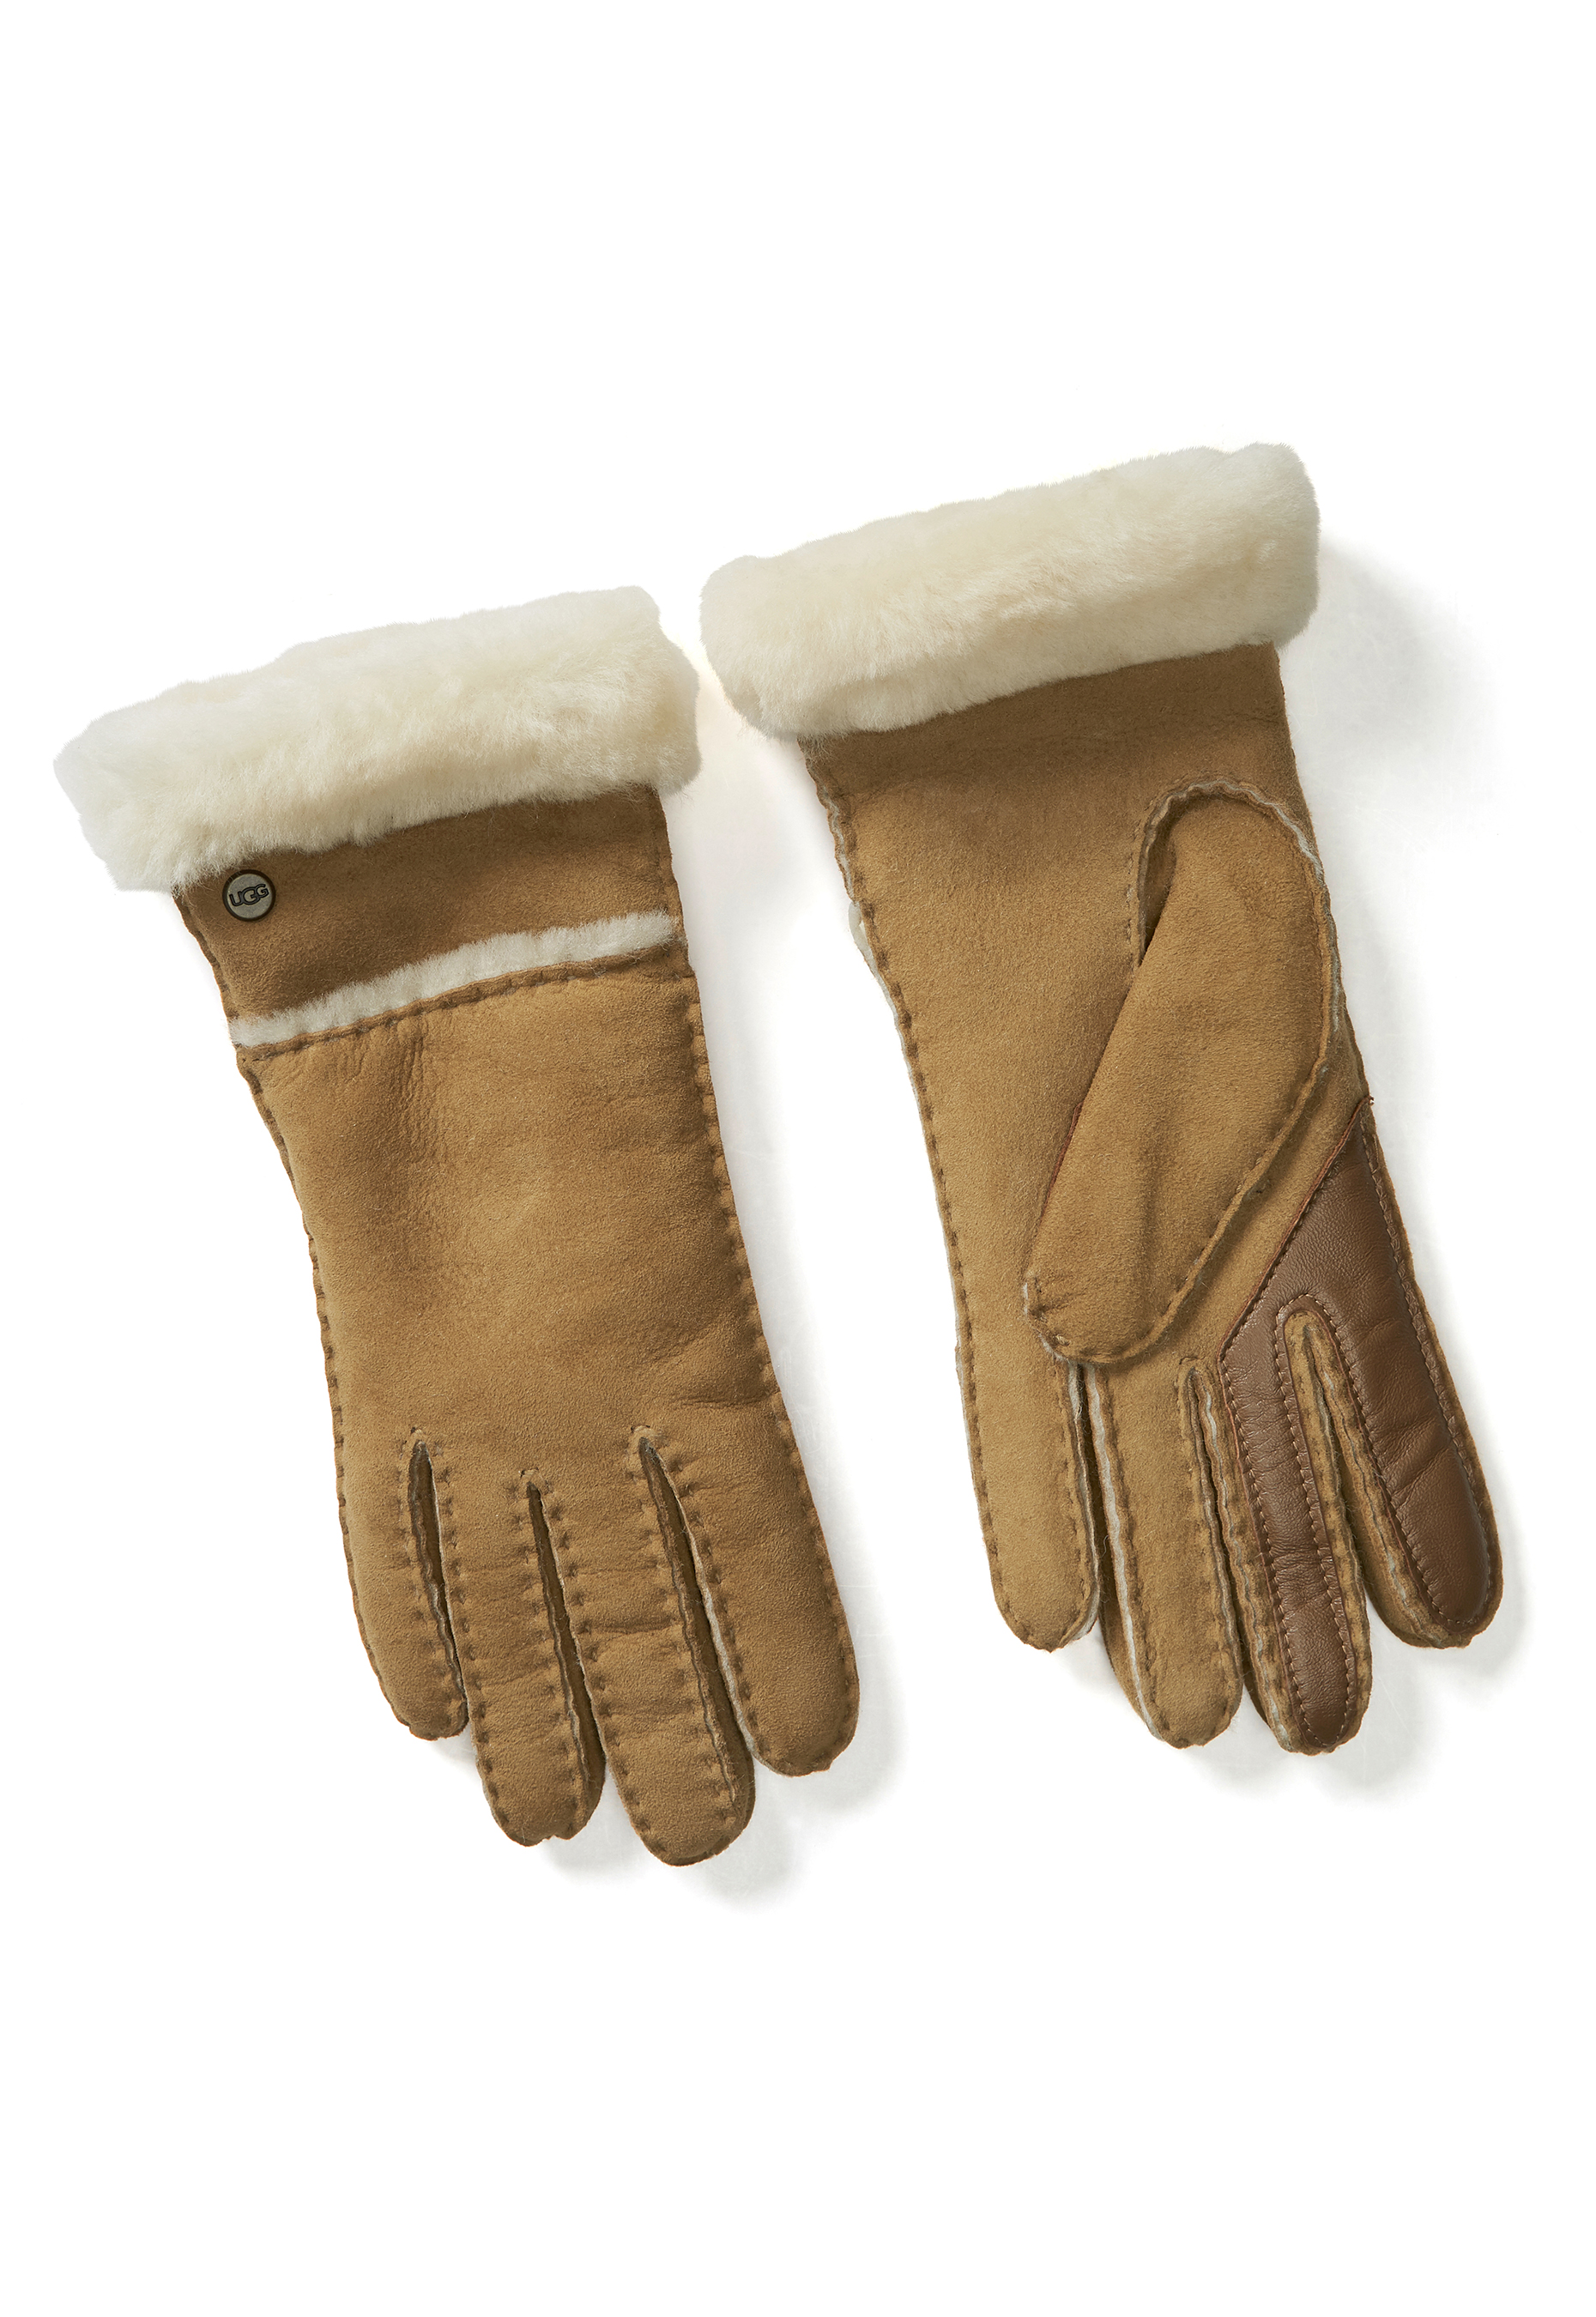 seamed tech glove